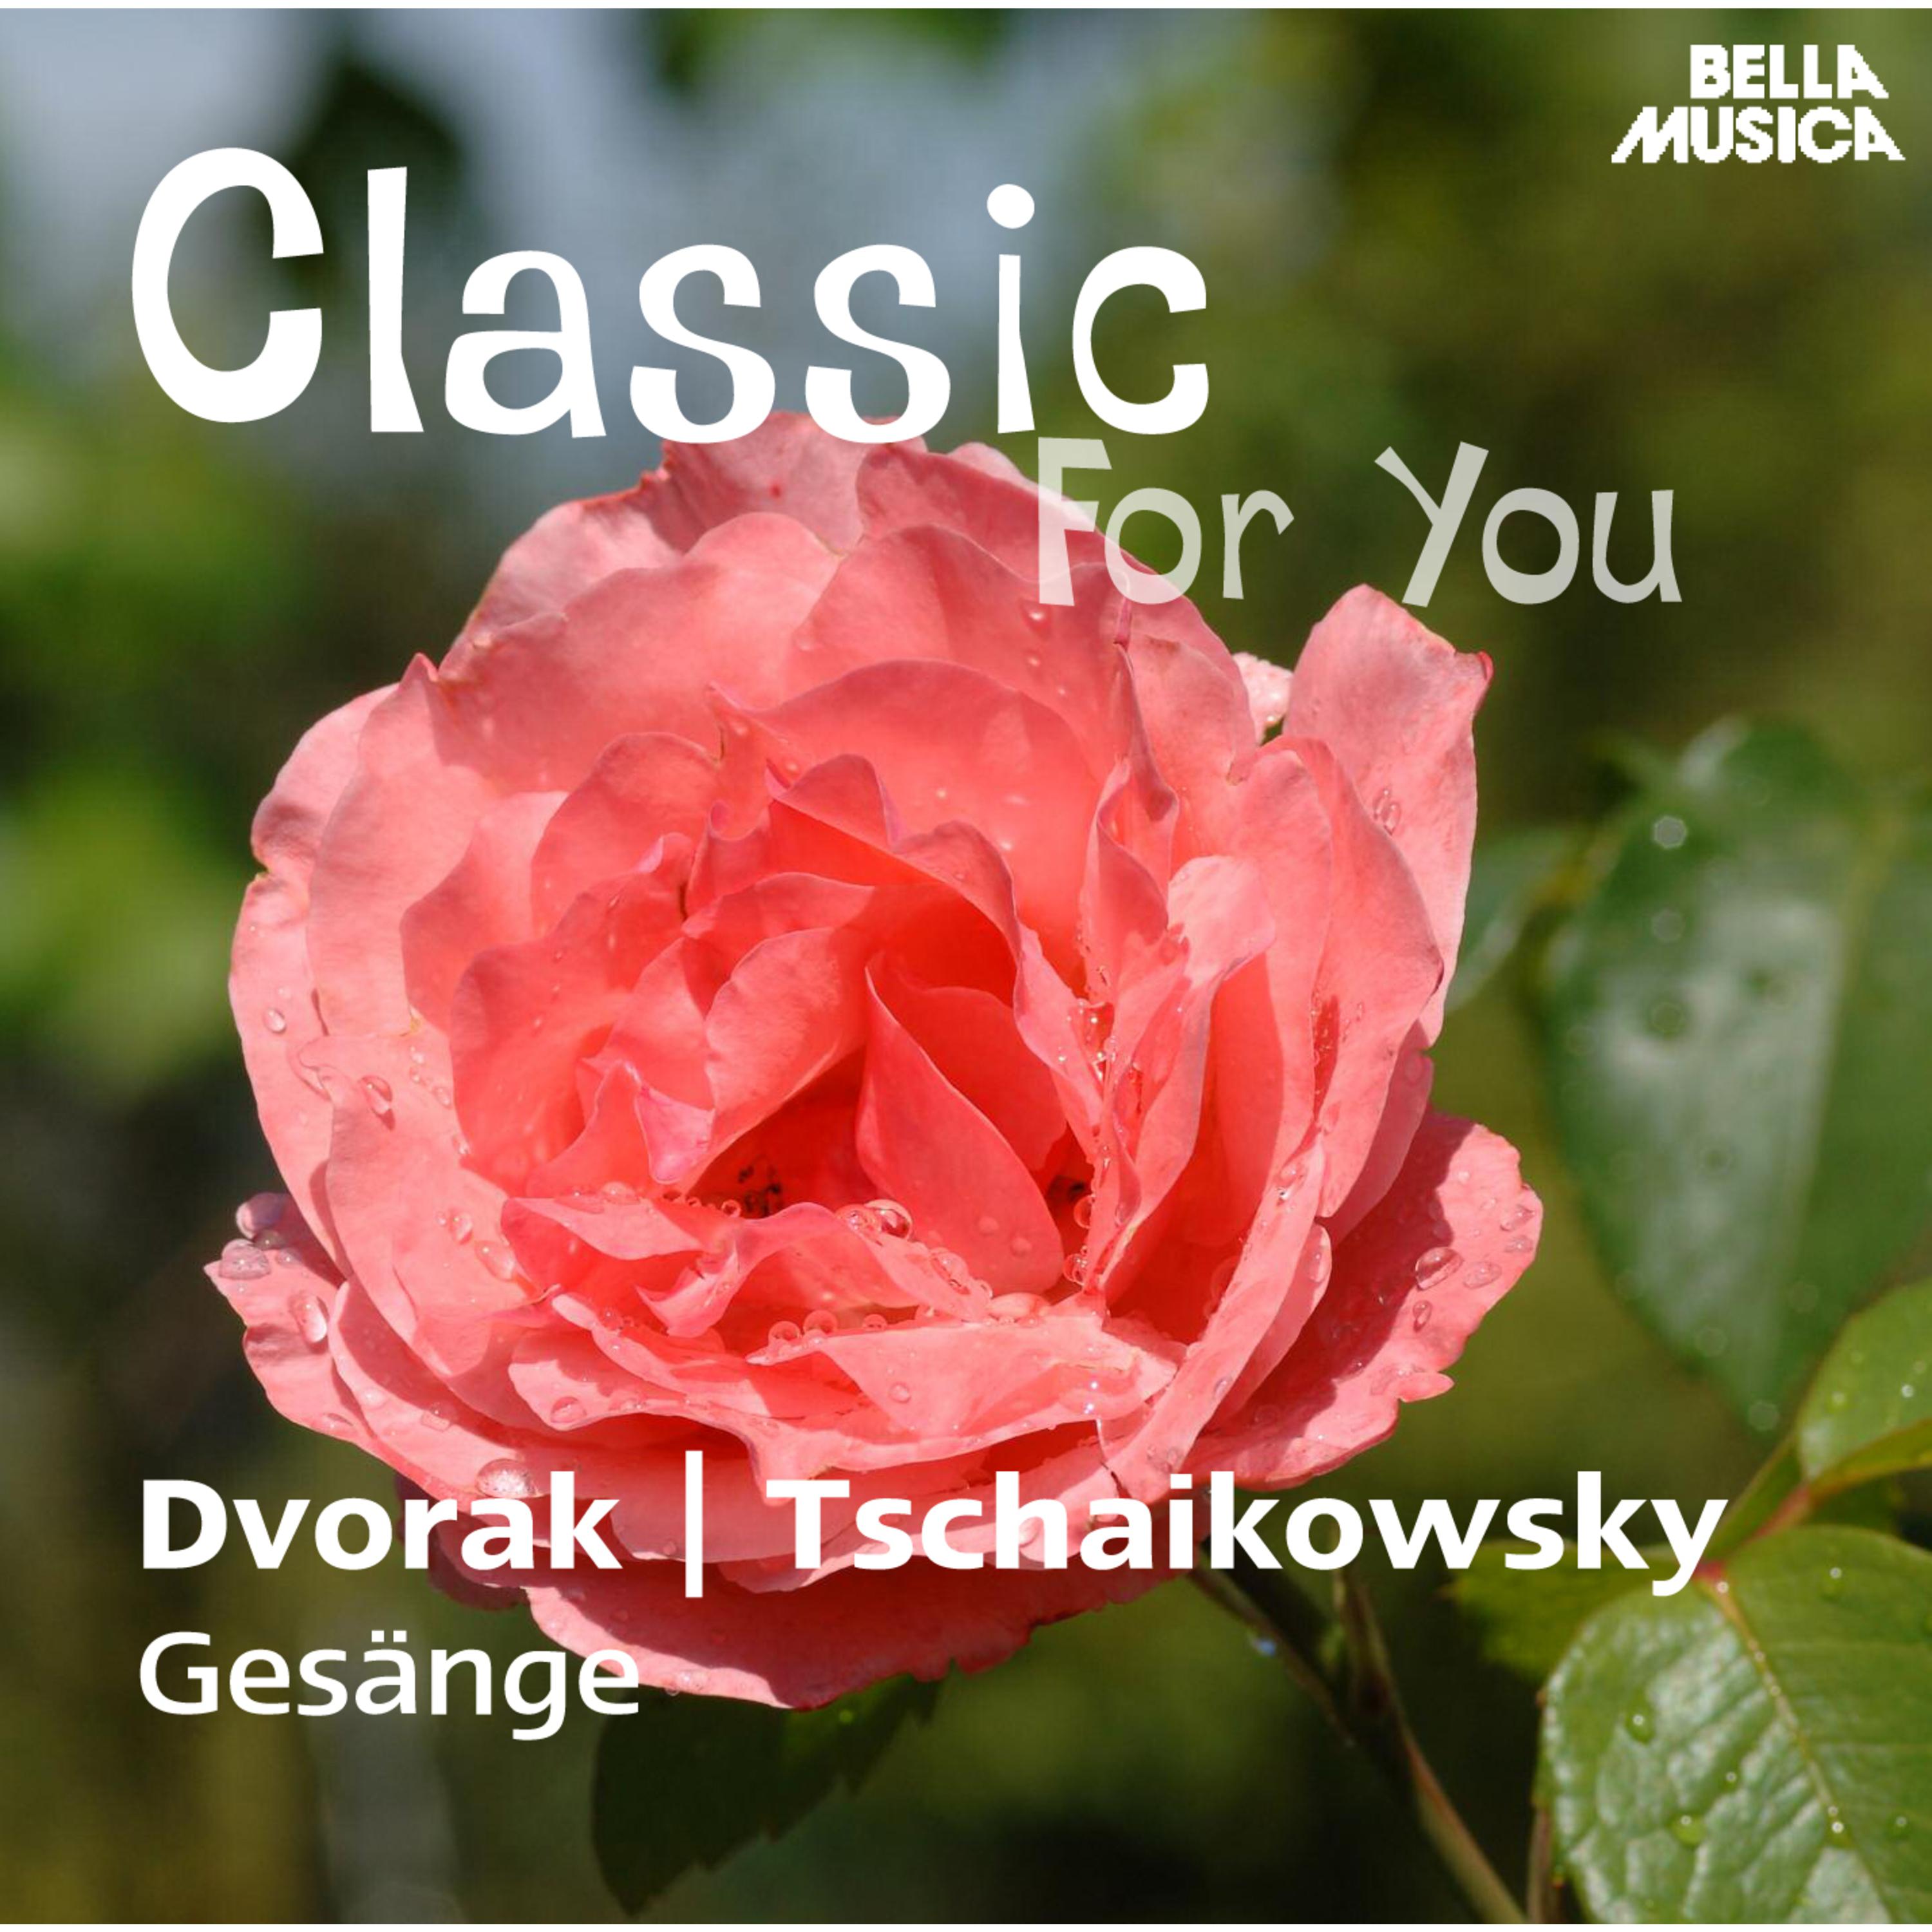 Classic for You: Dvorak: Biblische Lieder Op. 99  Tschaikowsky: Ges nge